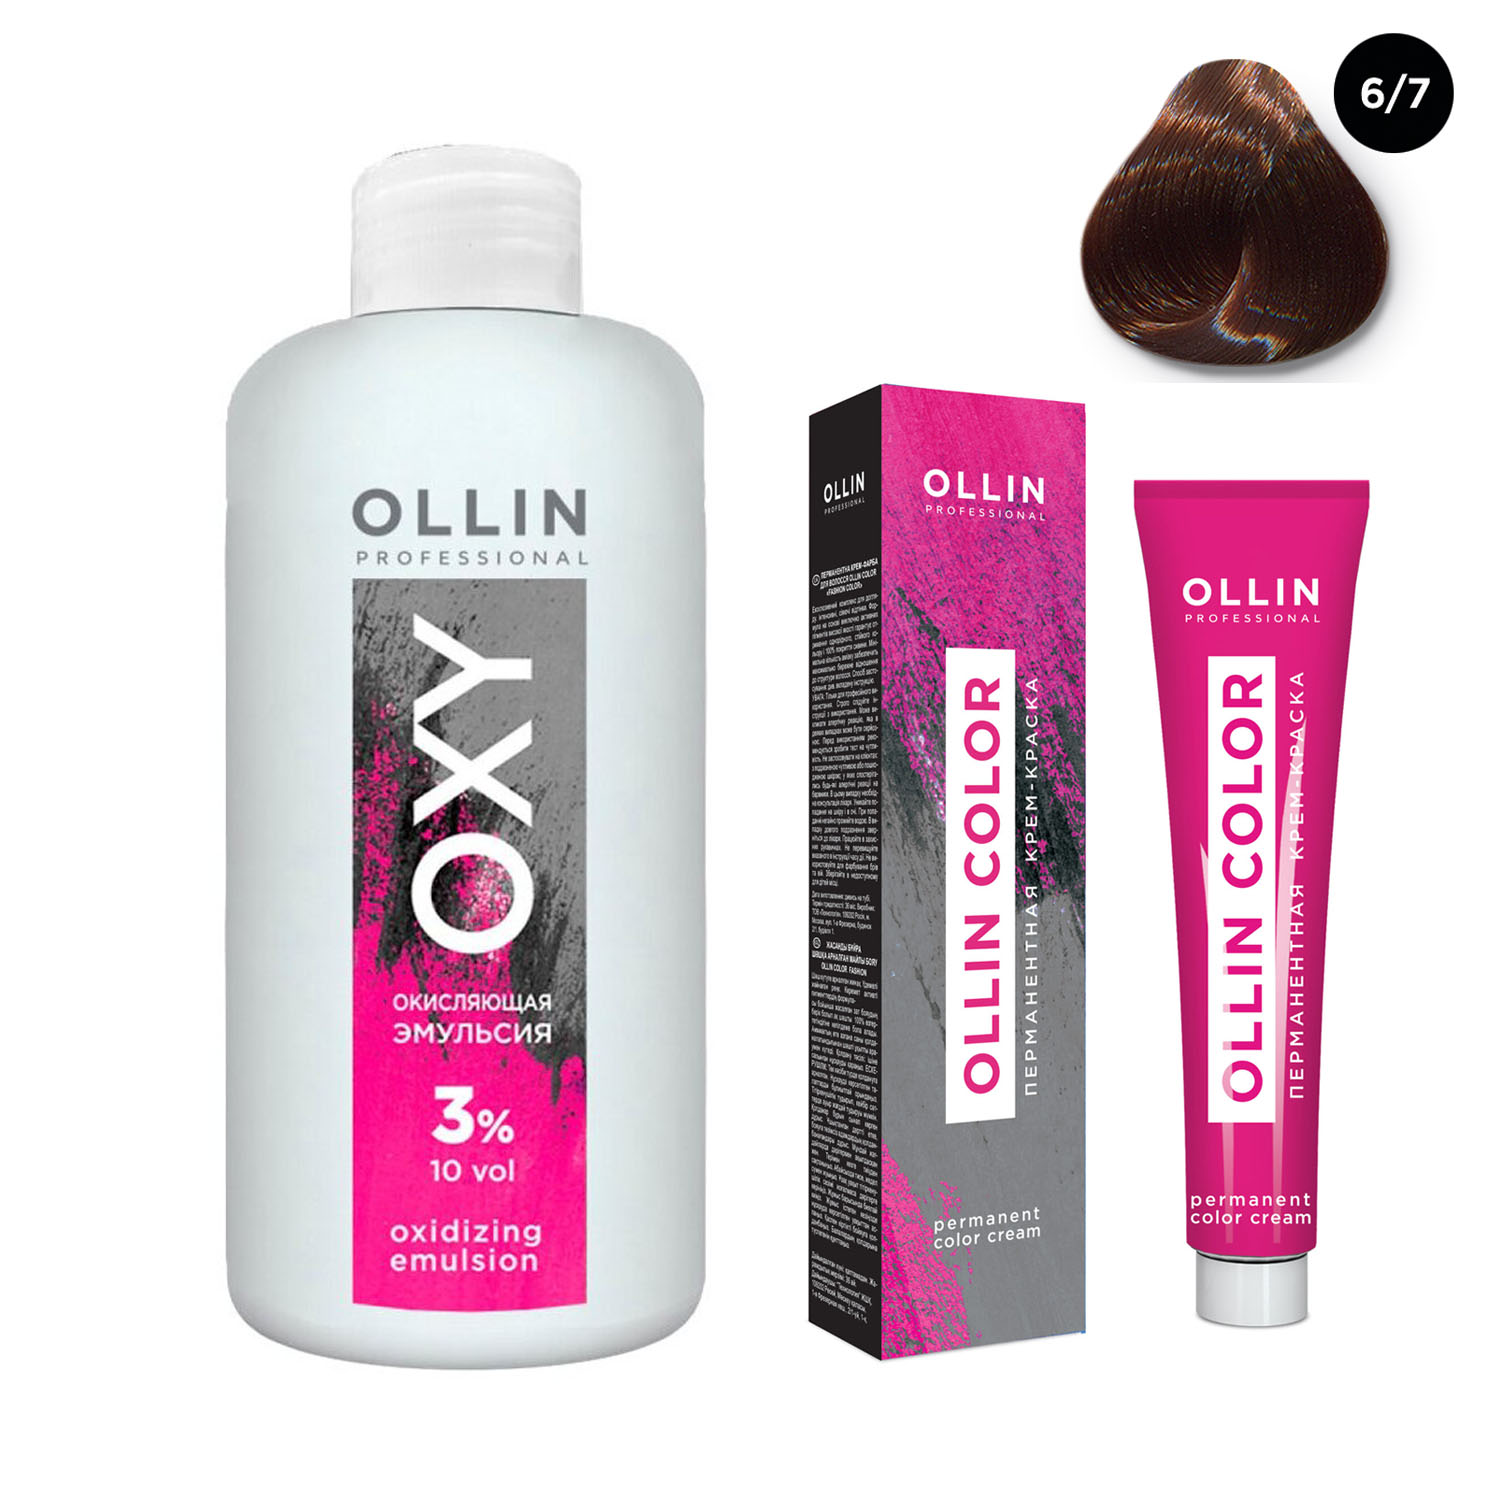 Ollin Professional Набор Перманентная крем-краска для волос Ollin Color оттенок 6/7 темно-русый коричневый 100 мл + Окисляющая эмульсия Oxy 3% 150 мл (Ollin Professional, Ollin Color)